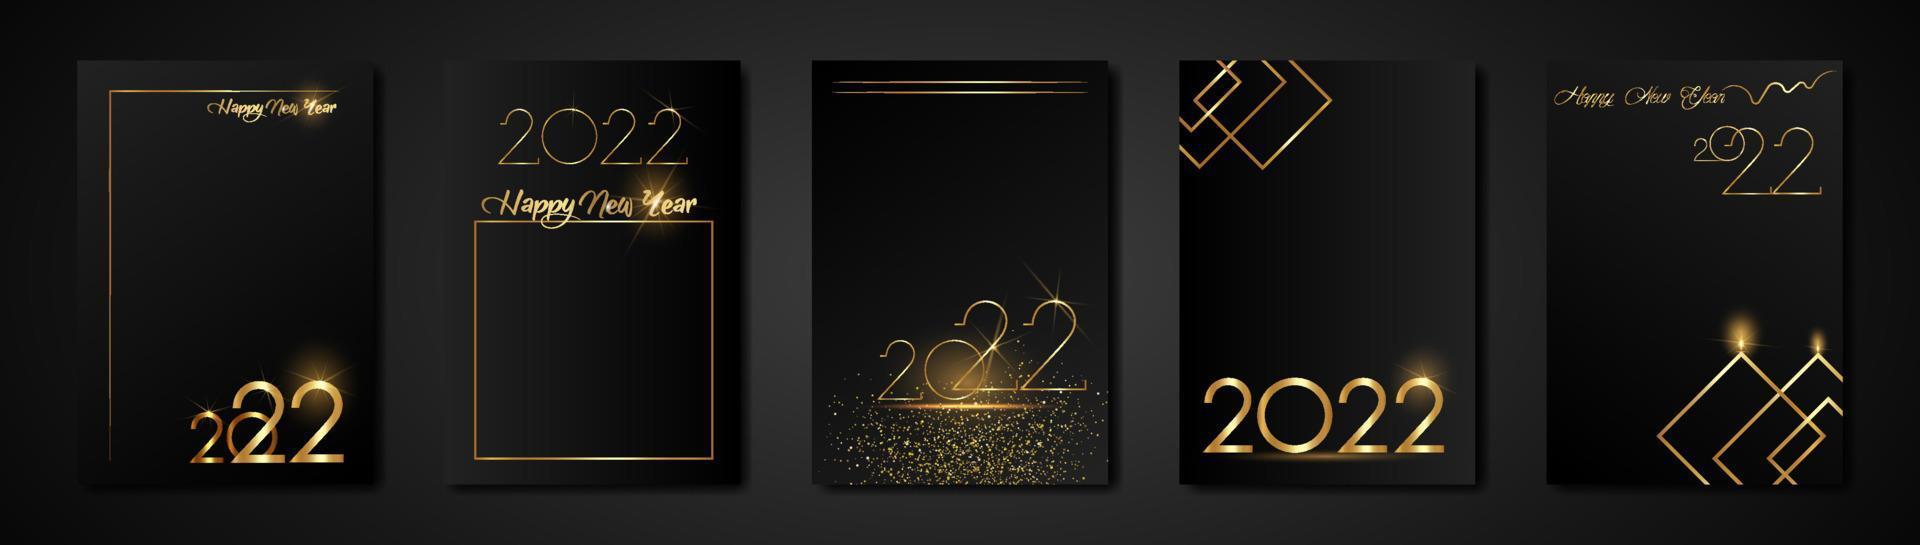 définir des cartes 2022 bonne année texture or, fond moderne noir de luxe doré, éléments pour calendrier et carte de voeux ou invitations de vacances d'hiver sur le thème de noël avec des décorations géométriques vecteur